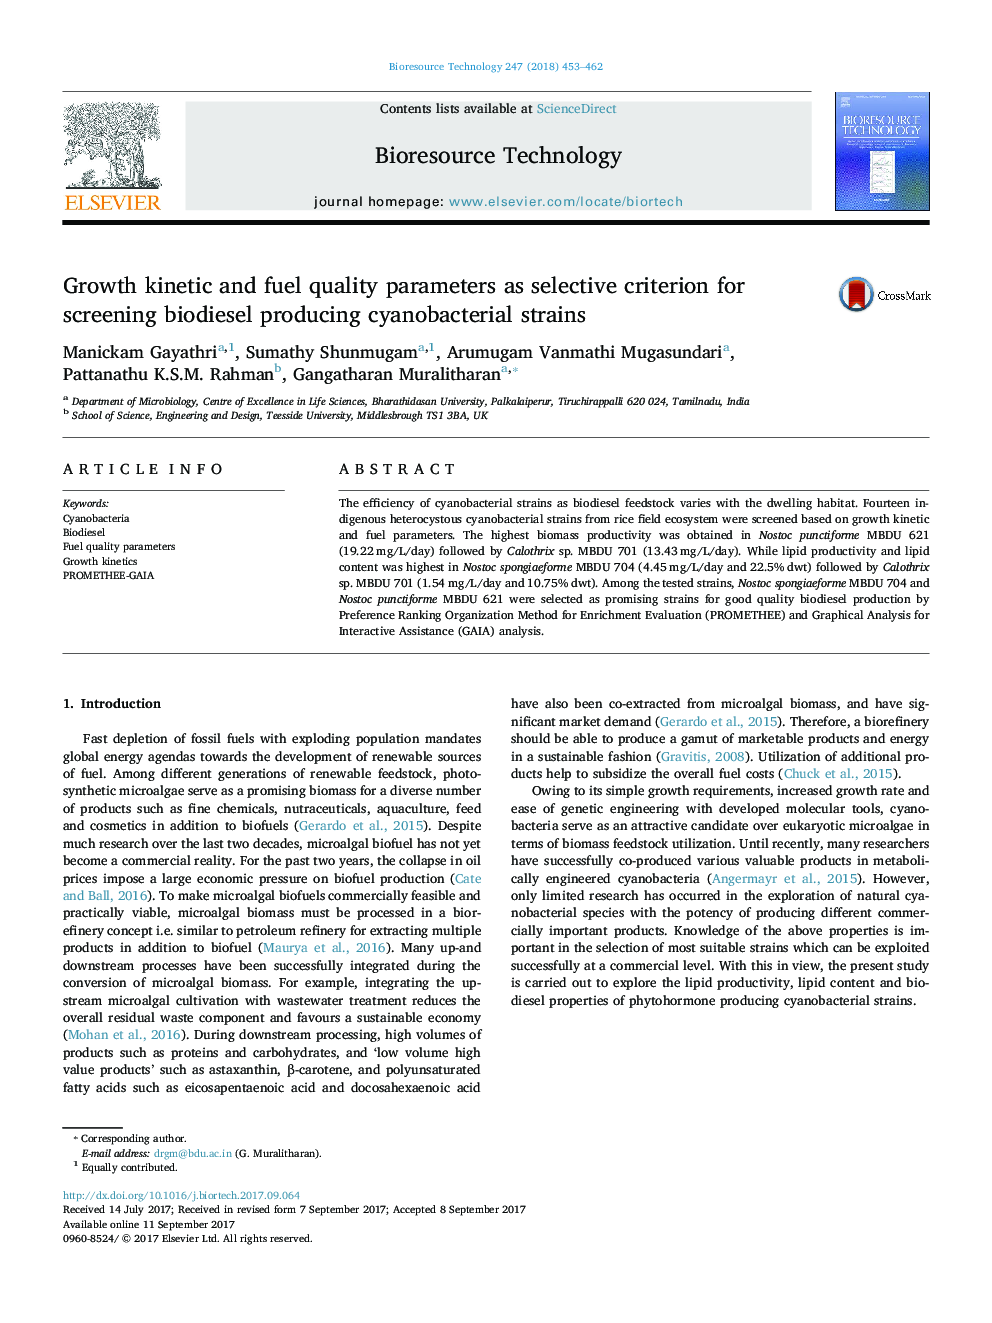 پارامترهای کینتیک رشد و کیفیت سوخت به عنوان معیار انتخابی برای غربالگری بیودیزل تولید سویه سیانوباکتریایی